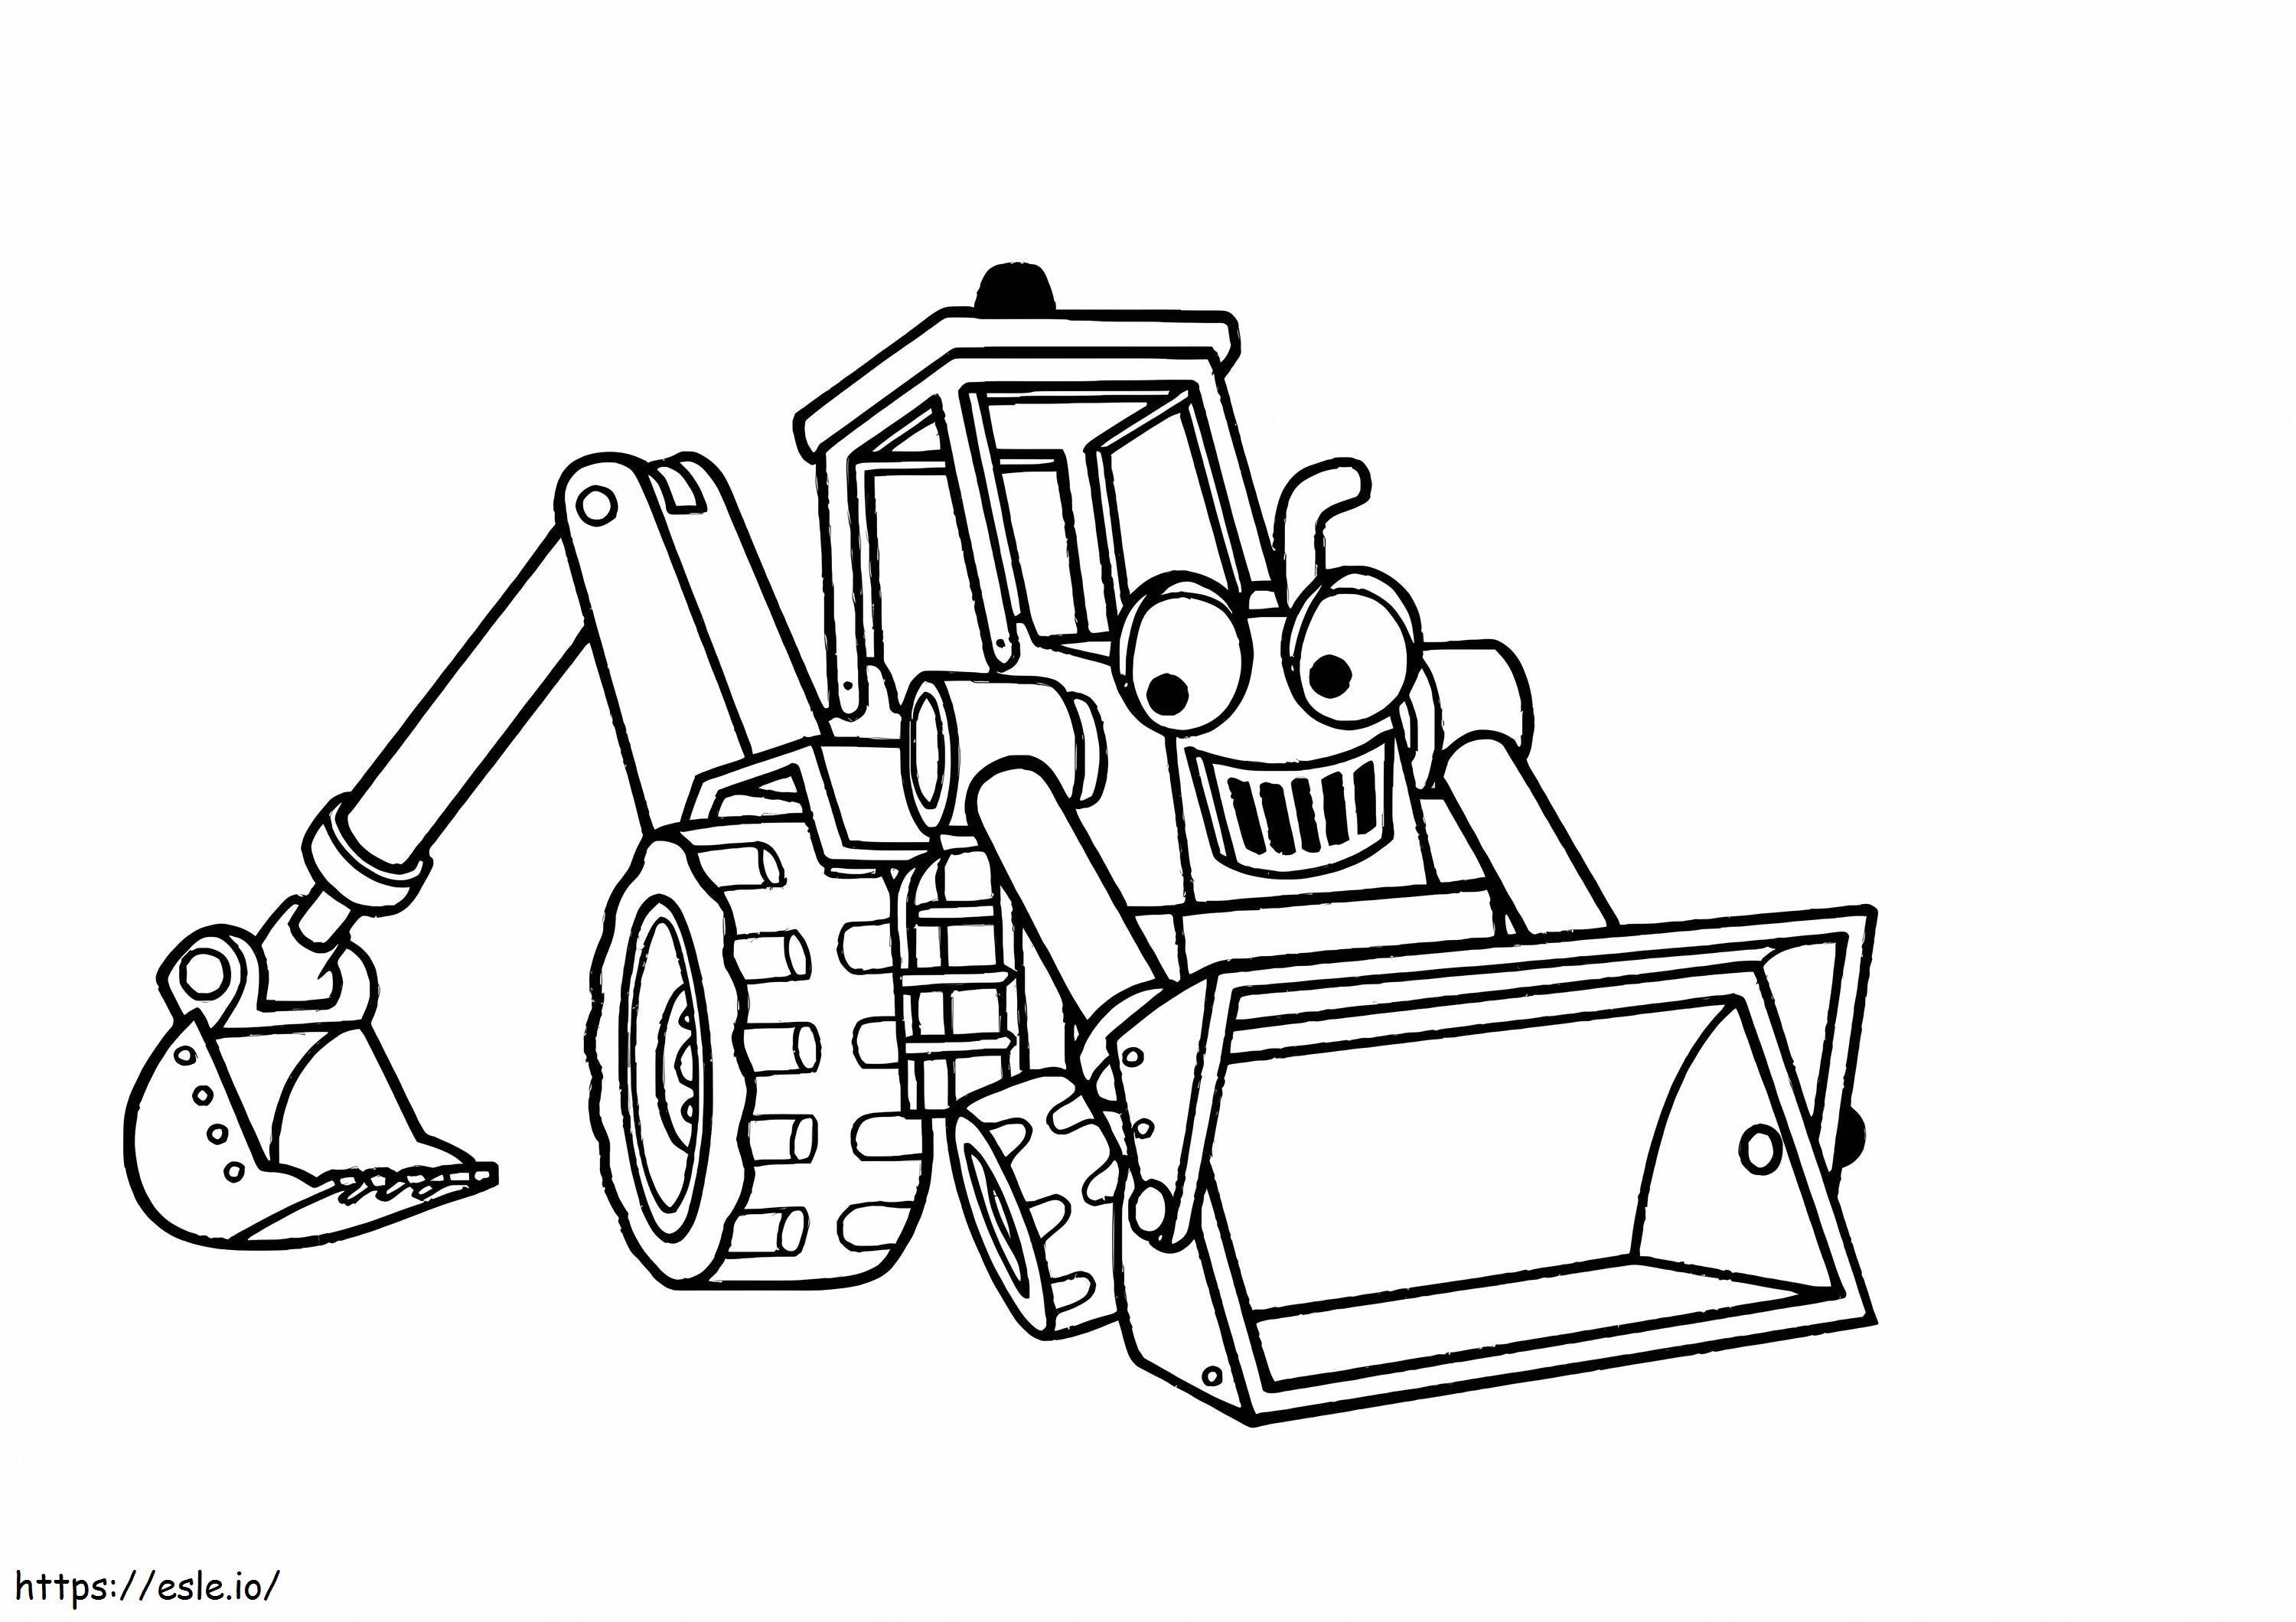 Coloriage Tracteur de dessin animé avec des yeux à imprimer dessin